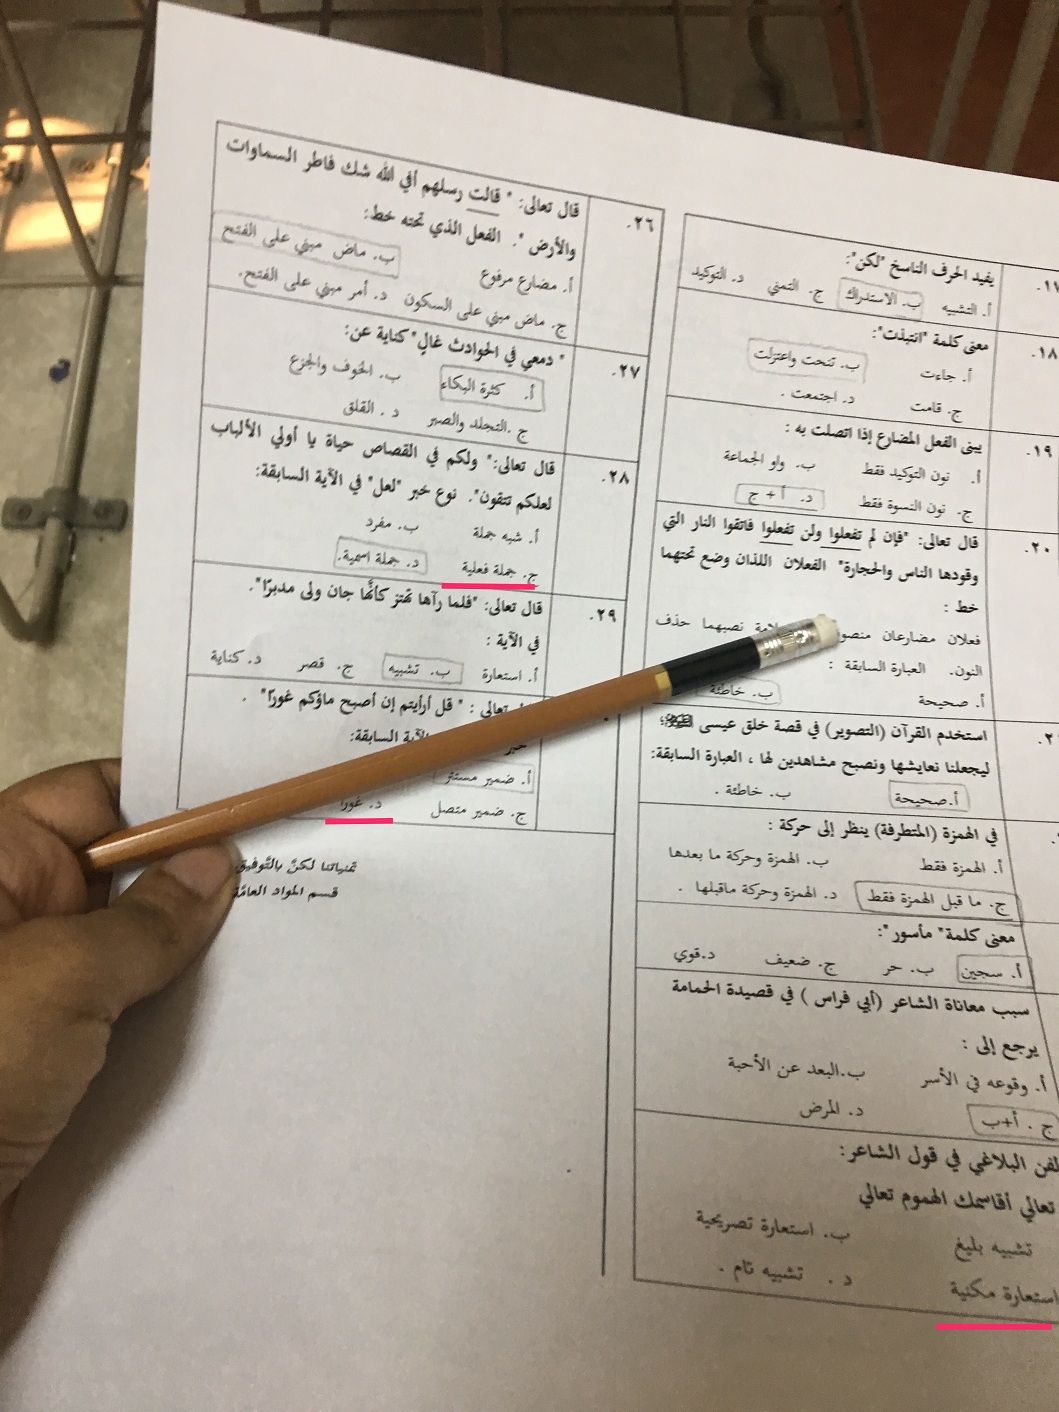 اختبار دوري ثاني المهارات اللغوية arab 101 الفصل الأول 1438هـ